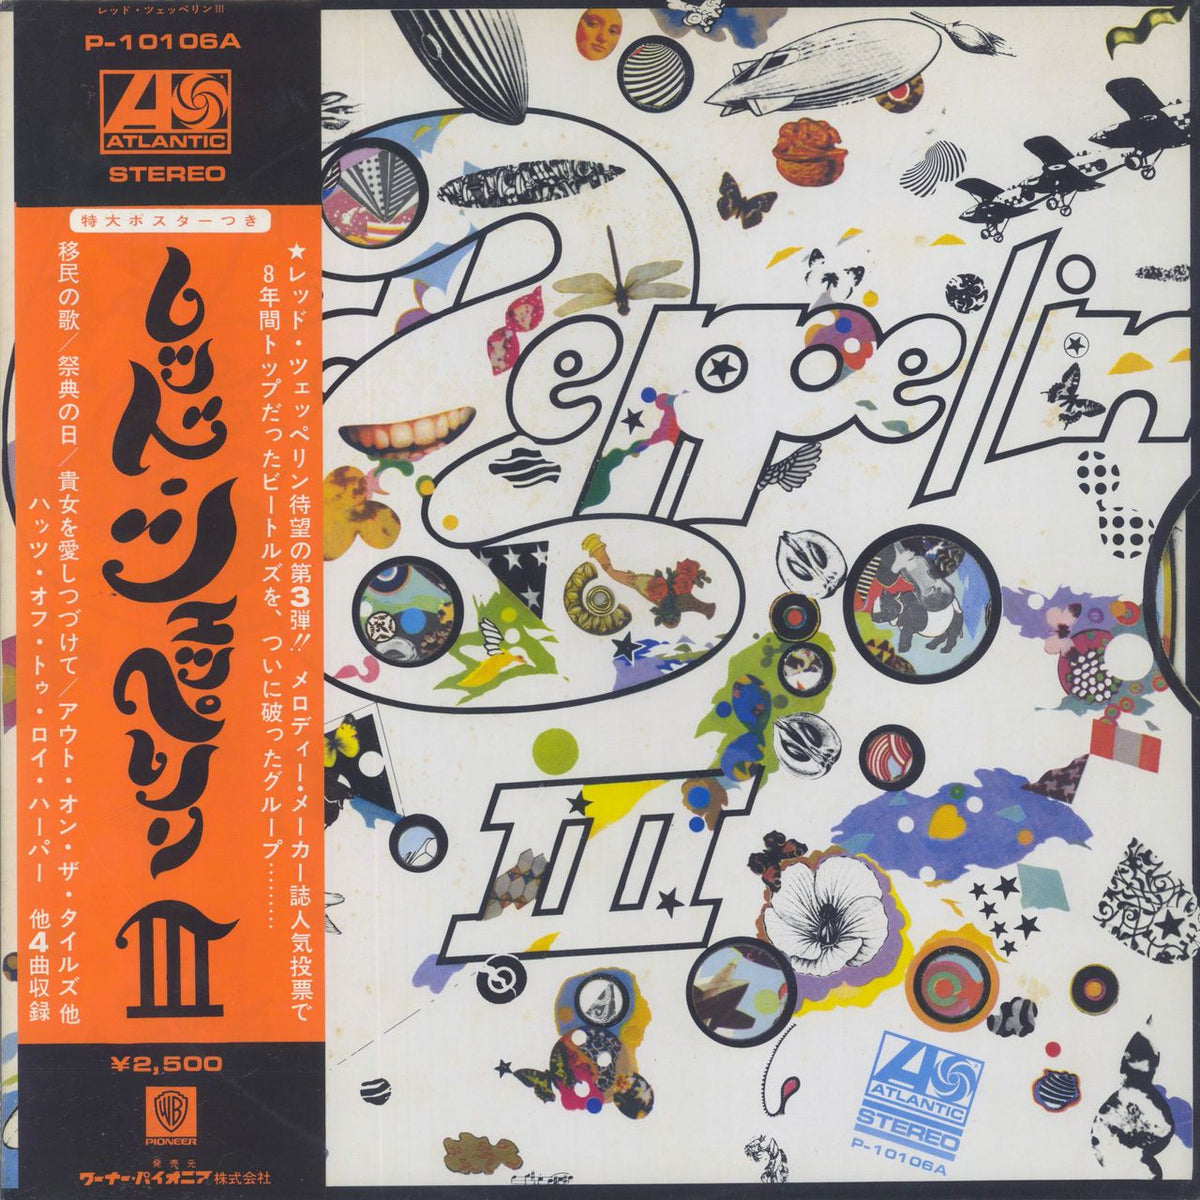 Led Zeppelin Led Zeppelin III + Poster Japanese Vinyl LP — RareVinyl.com